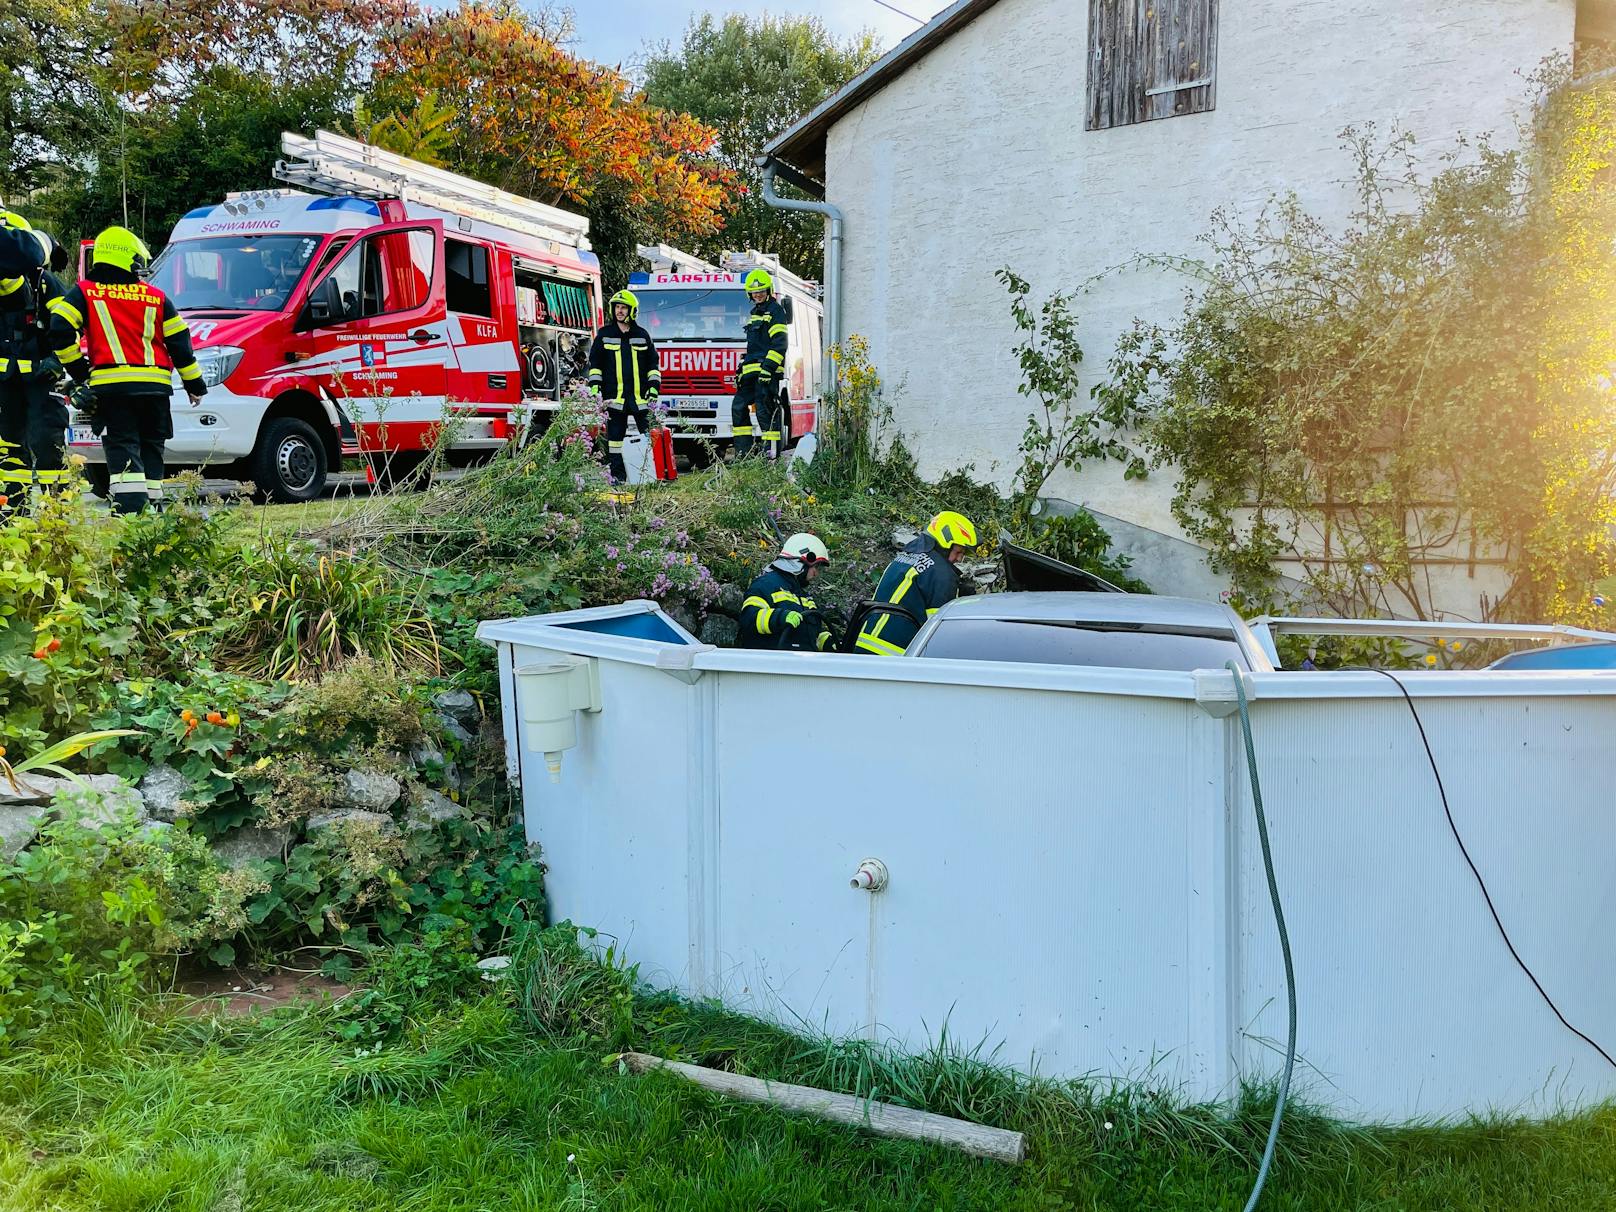 "Brand Kfz – Pkw in Pool", lautete die Einsatzmeldung für die Feuerwehr.